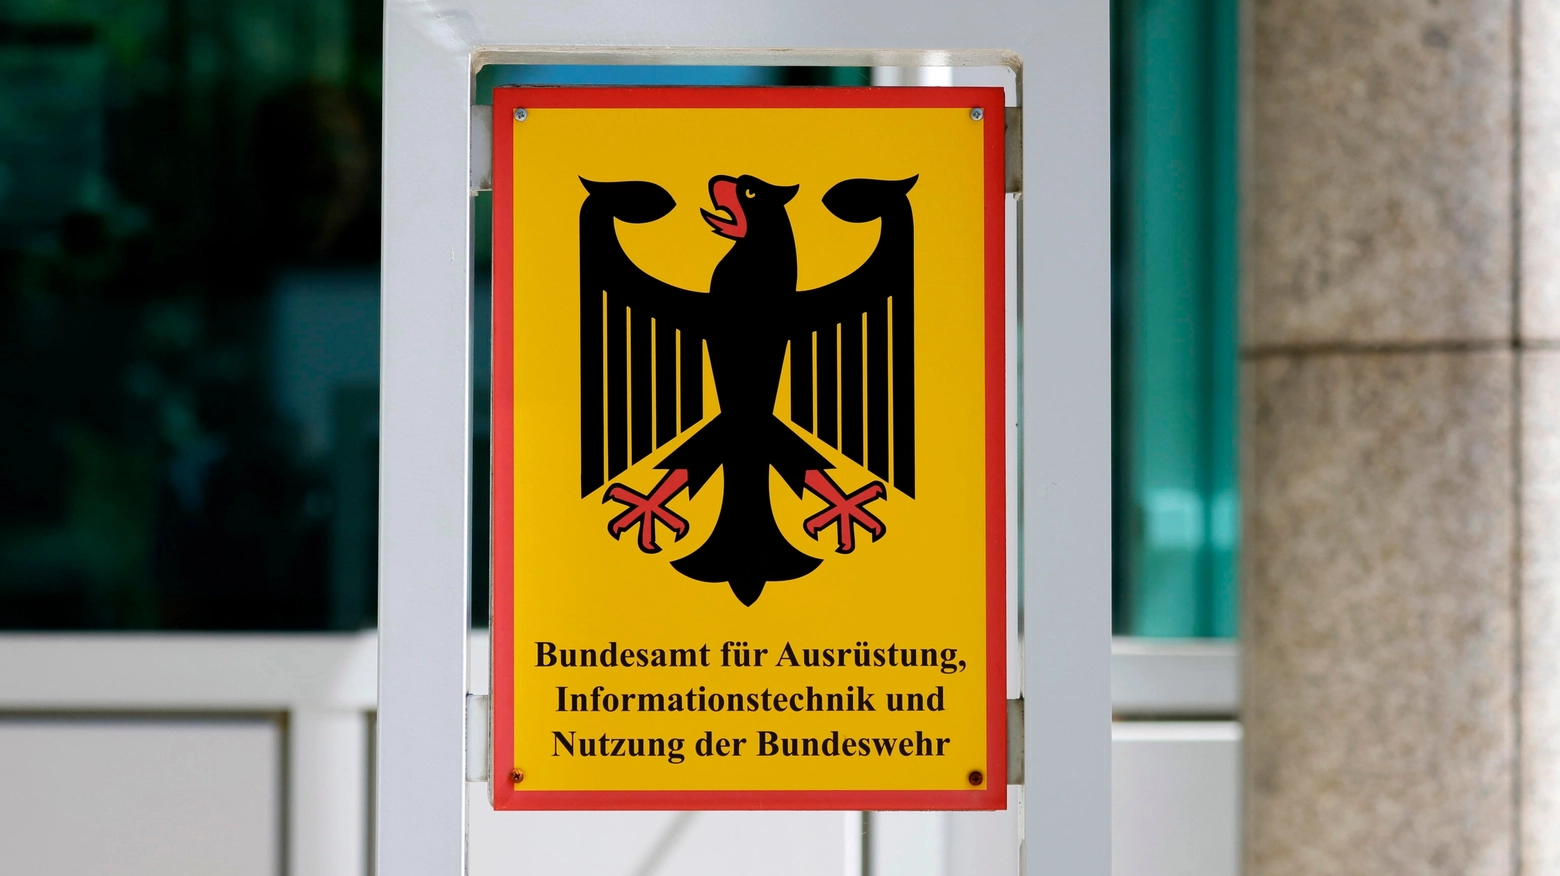 Baainbw, Bundesamt für Ausrüstung, Informationstechnik und Nutzung der Bundeswehr. Agenzia governativa tedesca